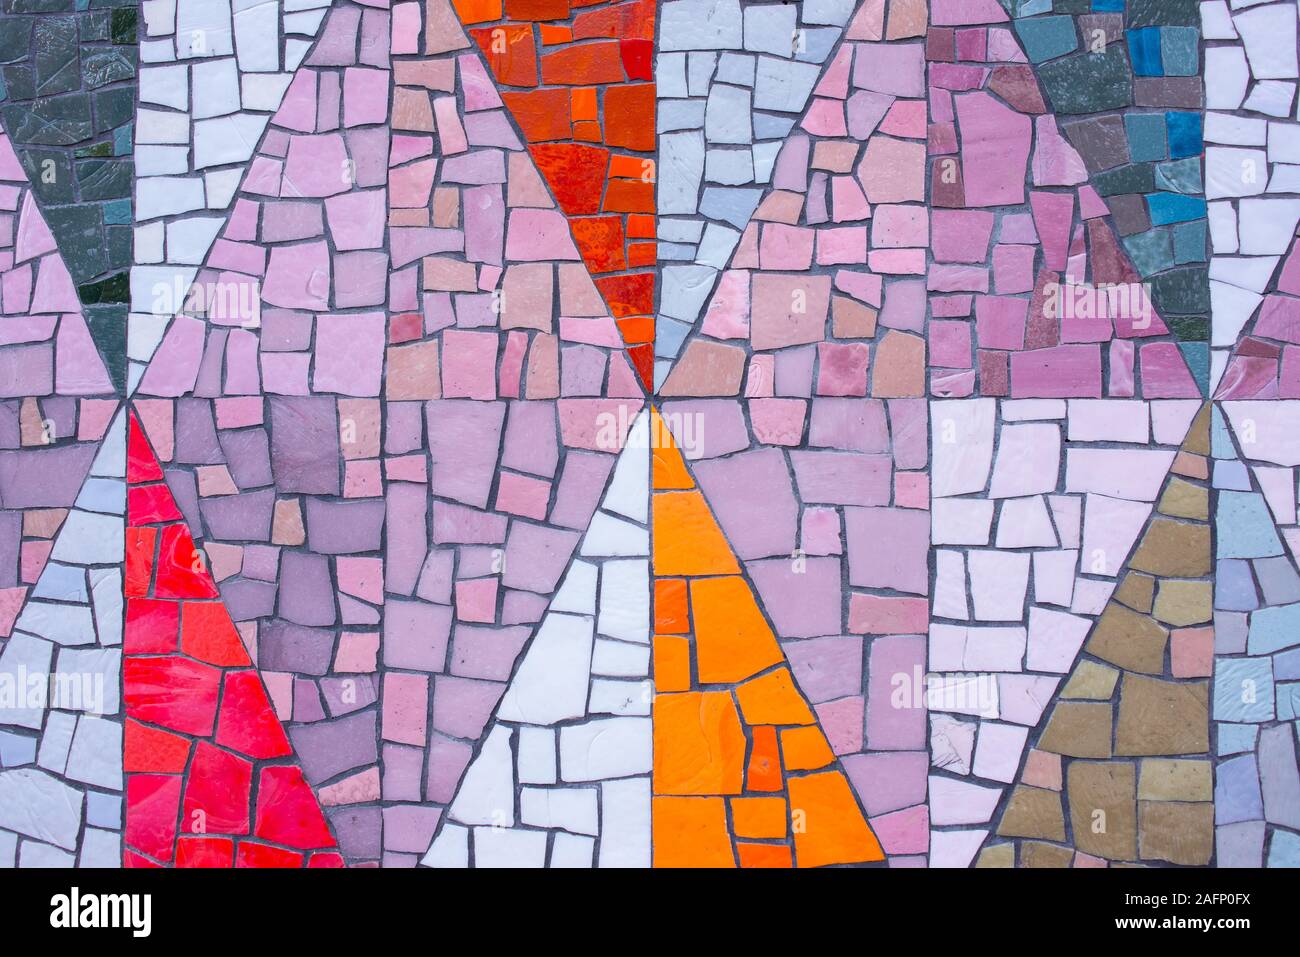 Mosaik Stein farbigen Muster in dreieckige Formen an der Wall Stockfoto